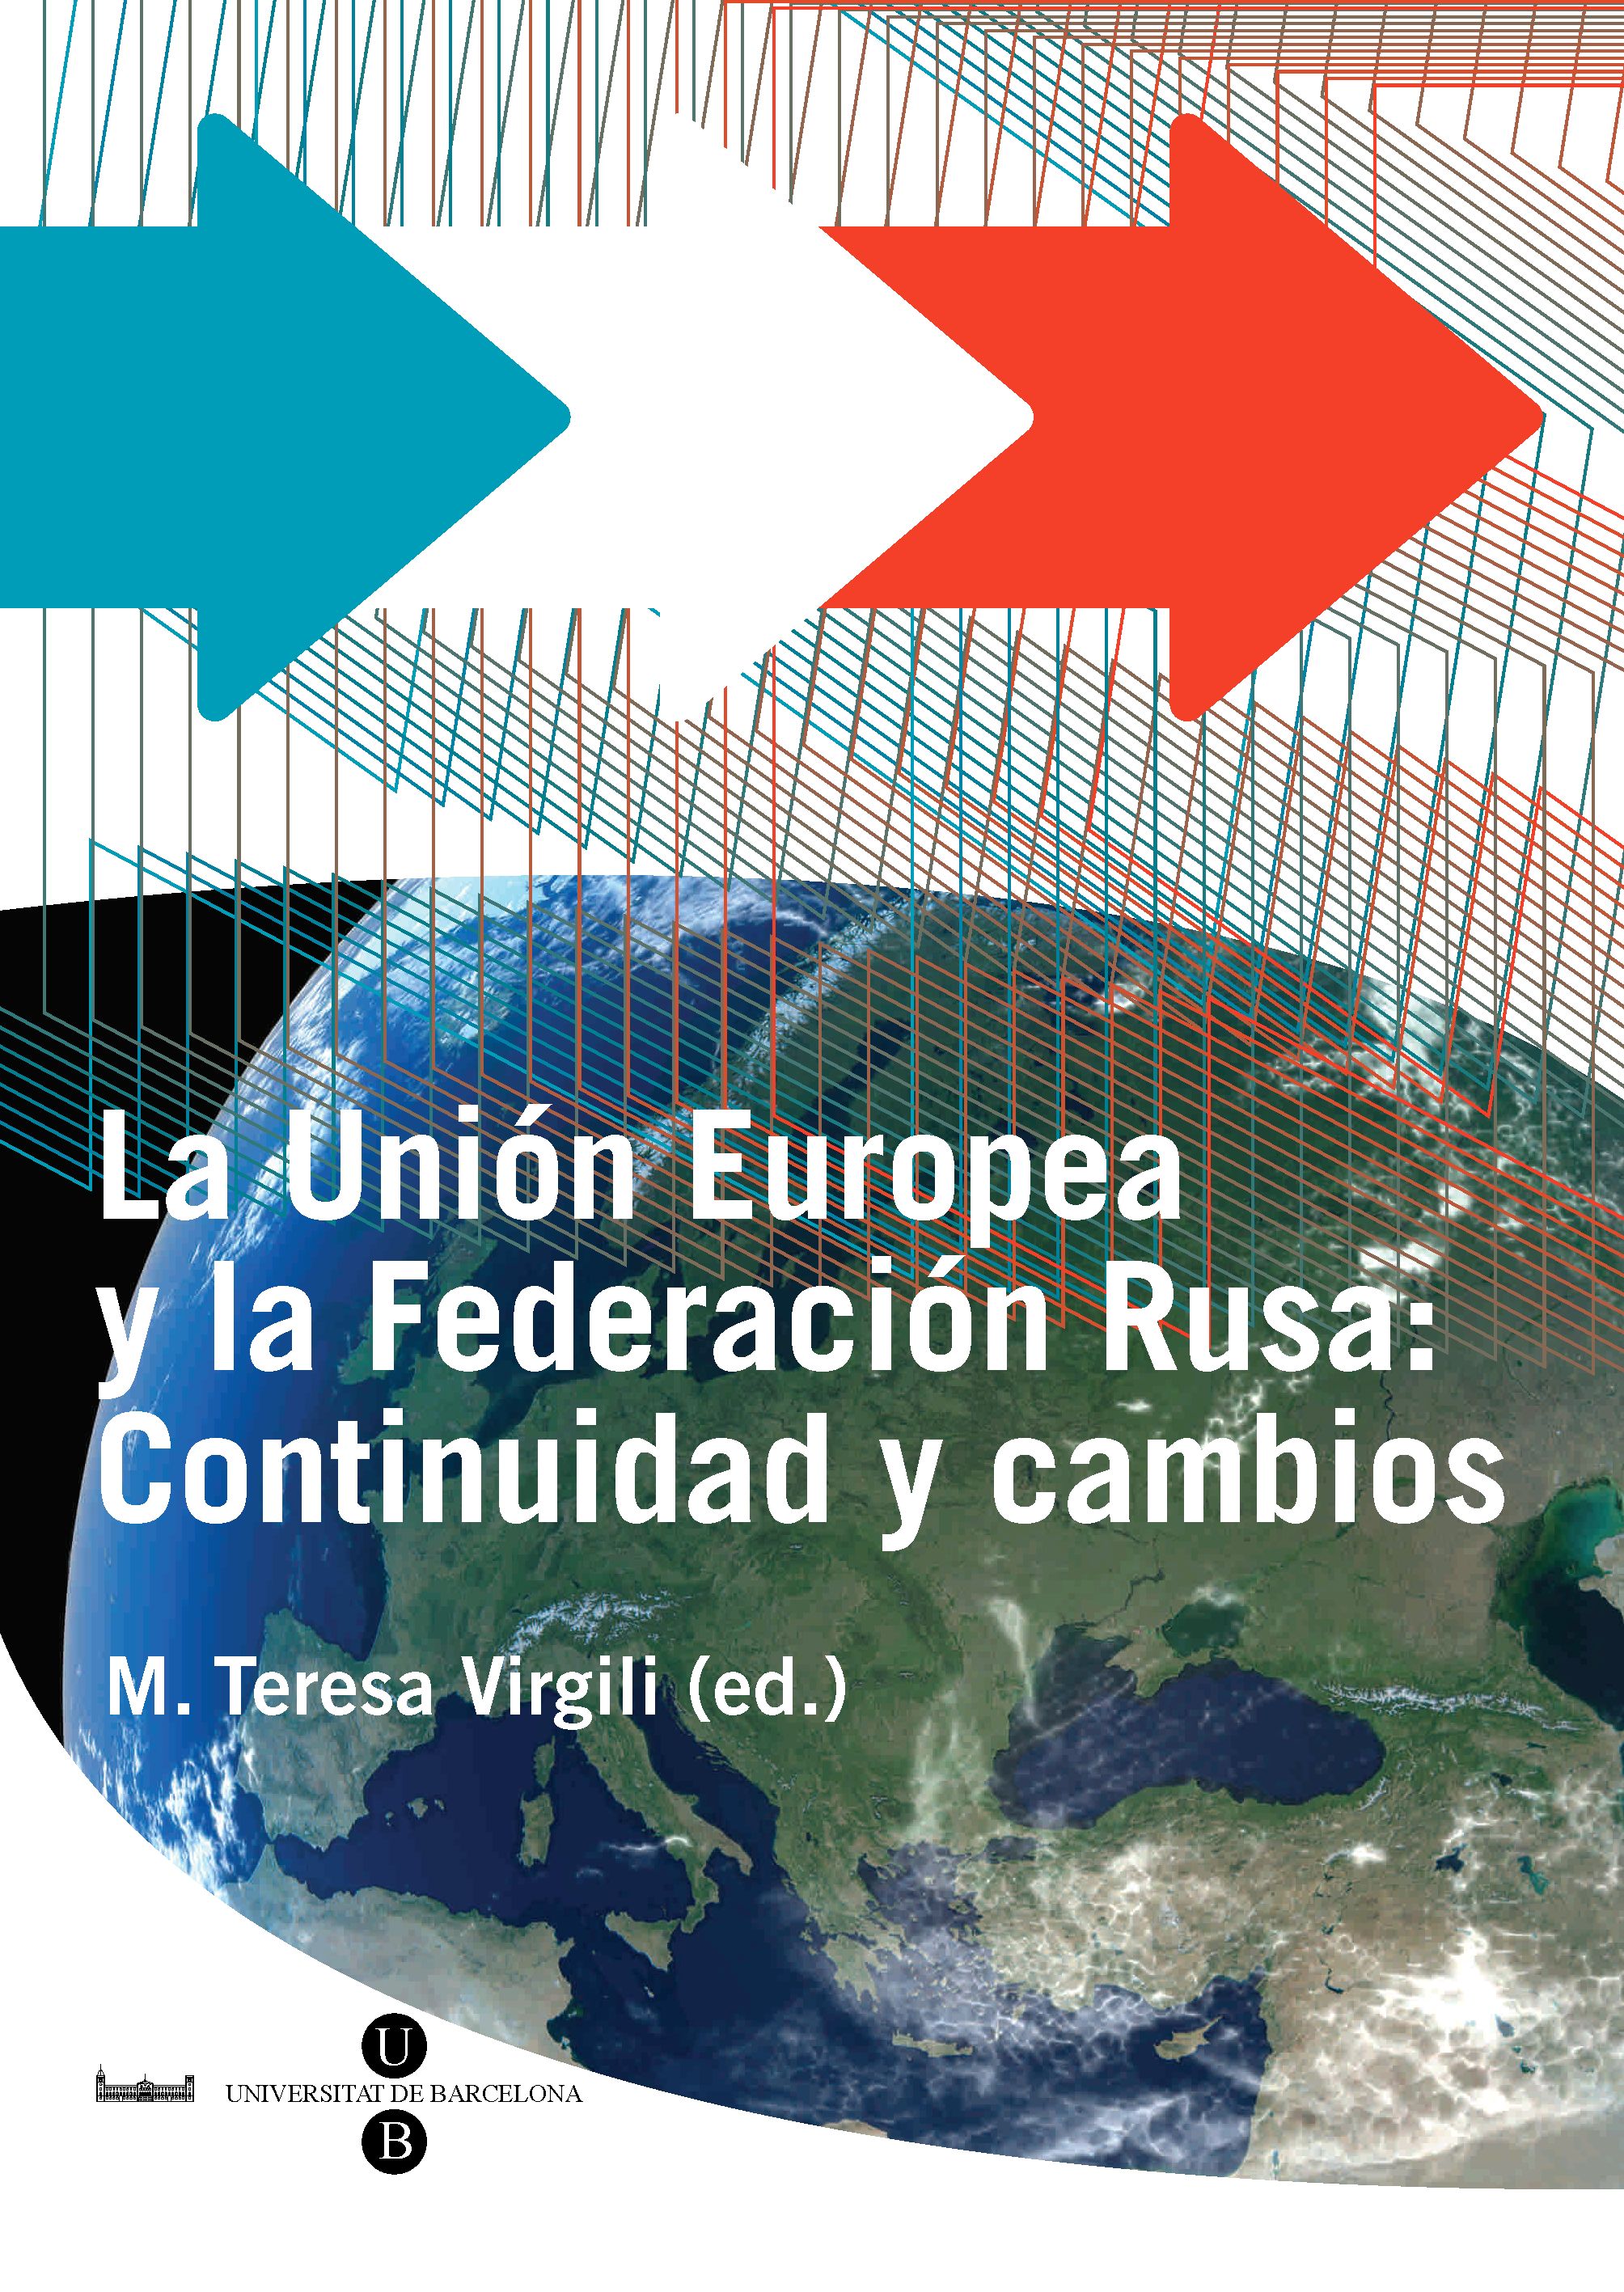 La Unión Europea y la Federación Rusa: Continuidad y cambios